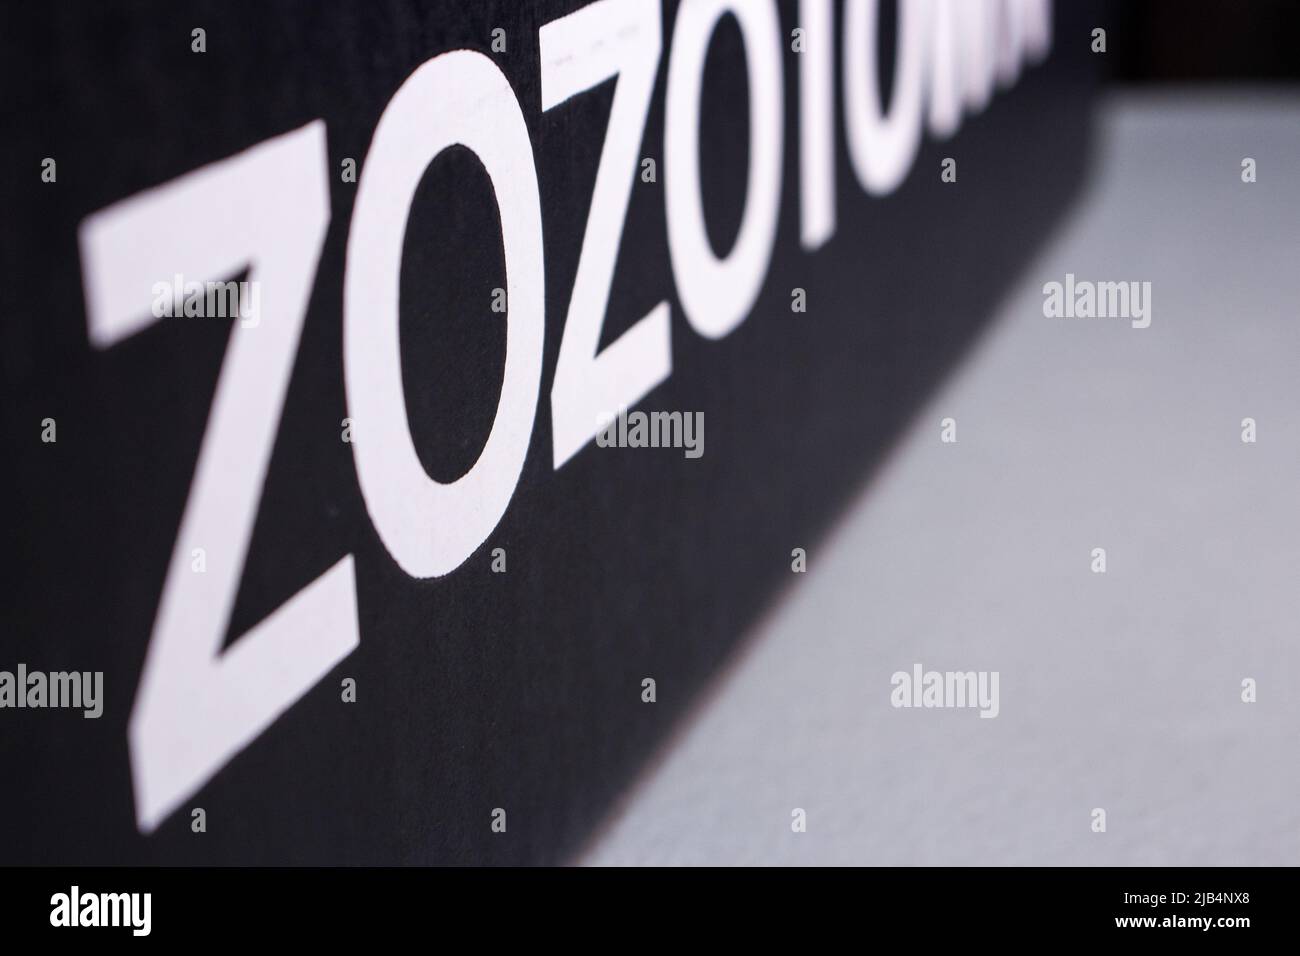 Kumamoto, Giappone - 2 apr 2020 : logo ZOZOTOWN su scatola di cartone. Si tratta di un negozio online di moda lanciato nel 2004 dal miliardario giapponese Yusaku Maezawa Foto Stock